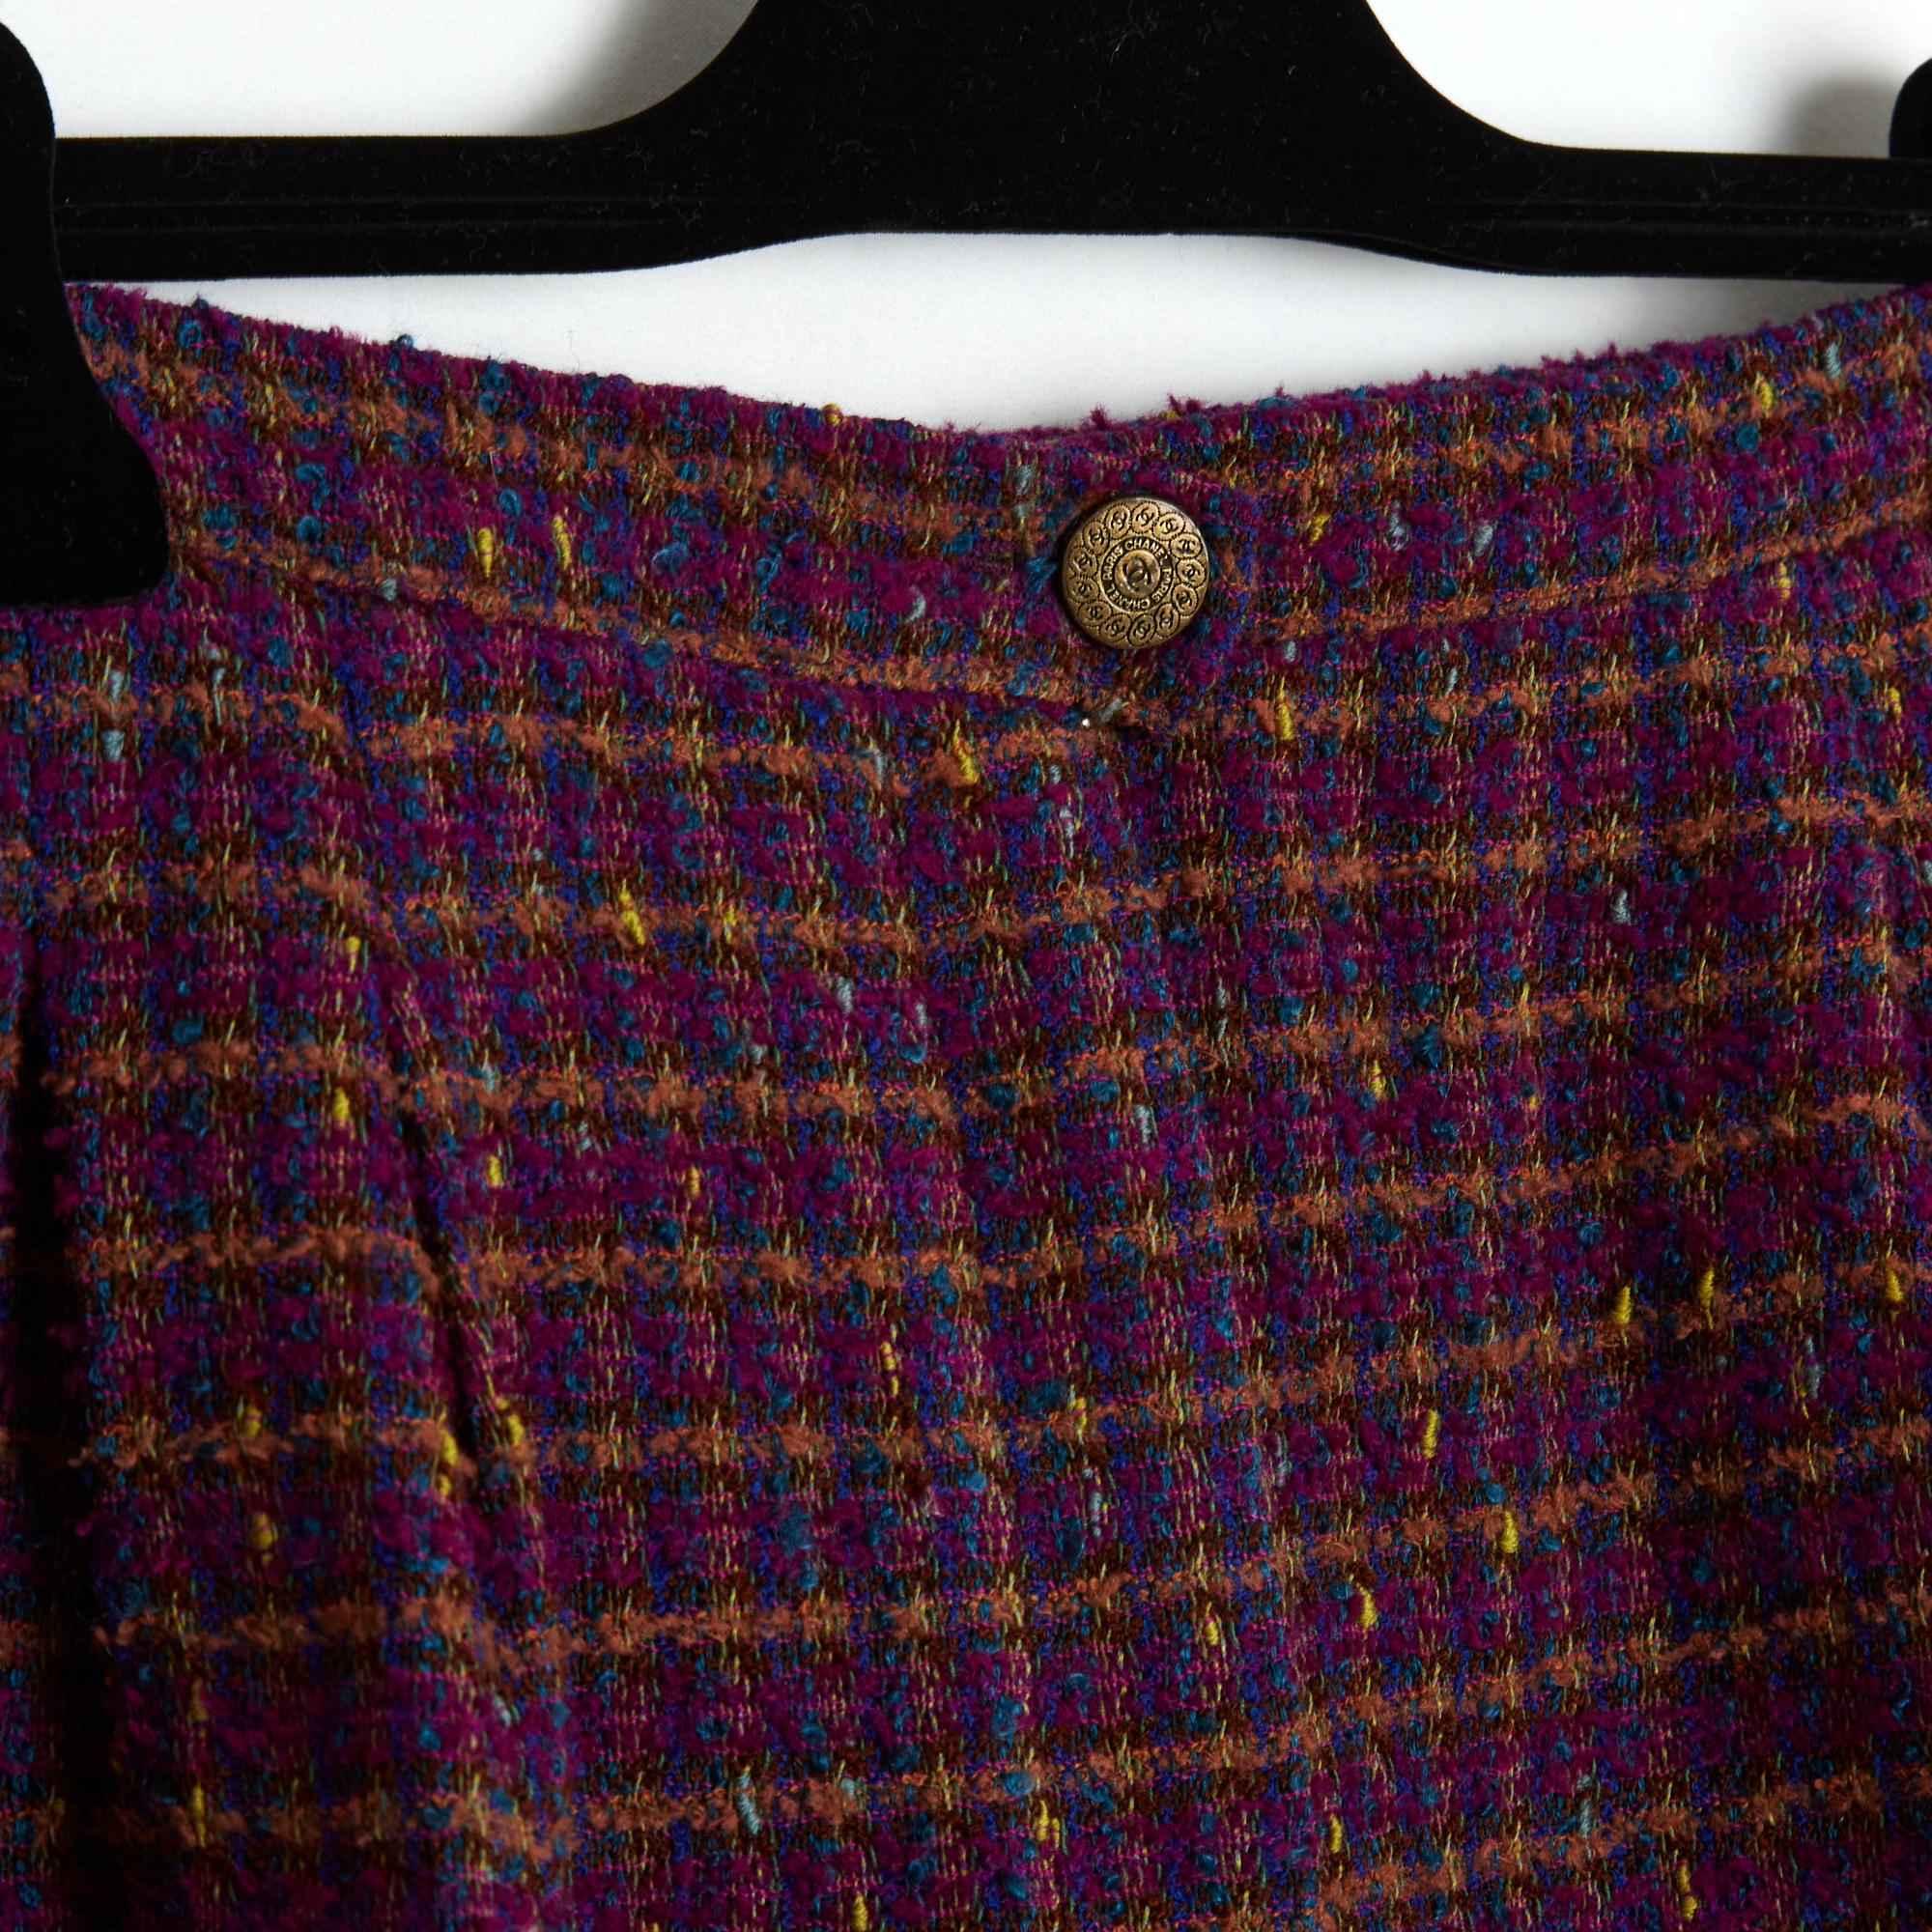 Chanel-Hose aus der Herbst-Winter-Kollektion 1997 aus Woll-Tweed in Pflaumen-, Blau- und Ockertönen, hohe Taille mit Bundfalten, 2 seitliche Einschubtaschen, extra großes Volumen (und weicher Stoff), Knopf- und Reißverschluss, nur im oberen Bereich